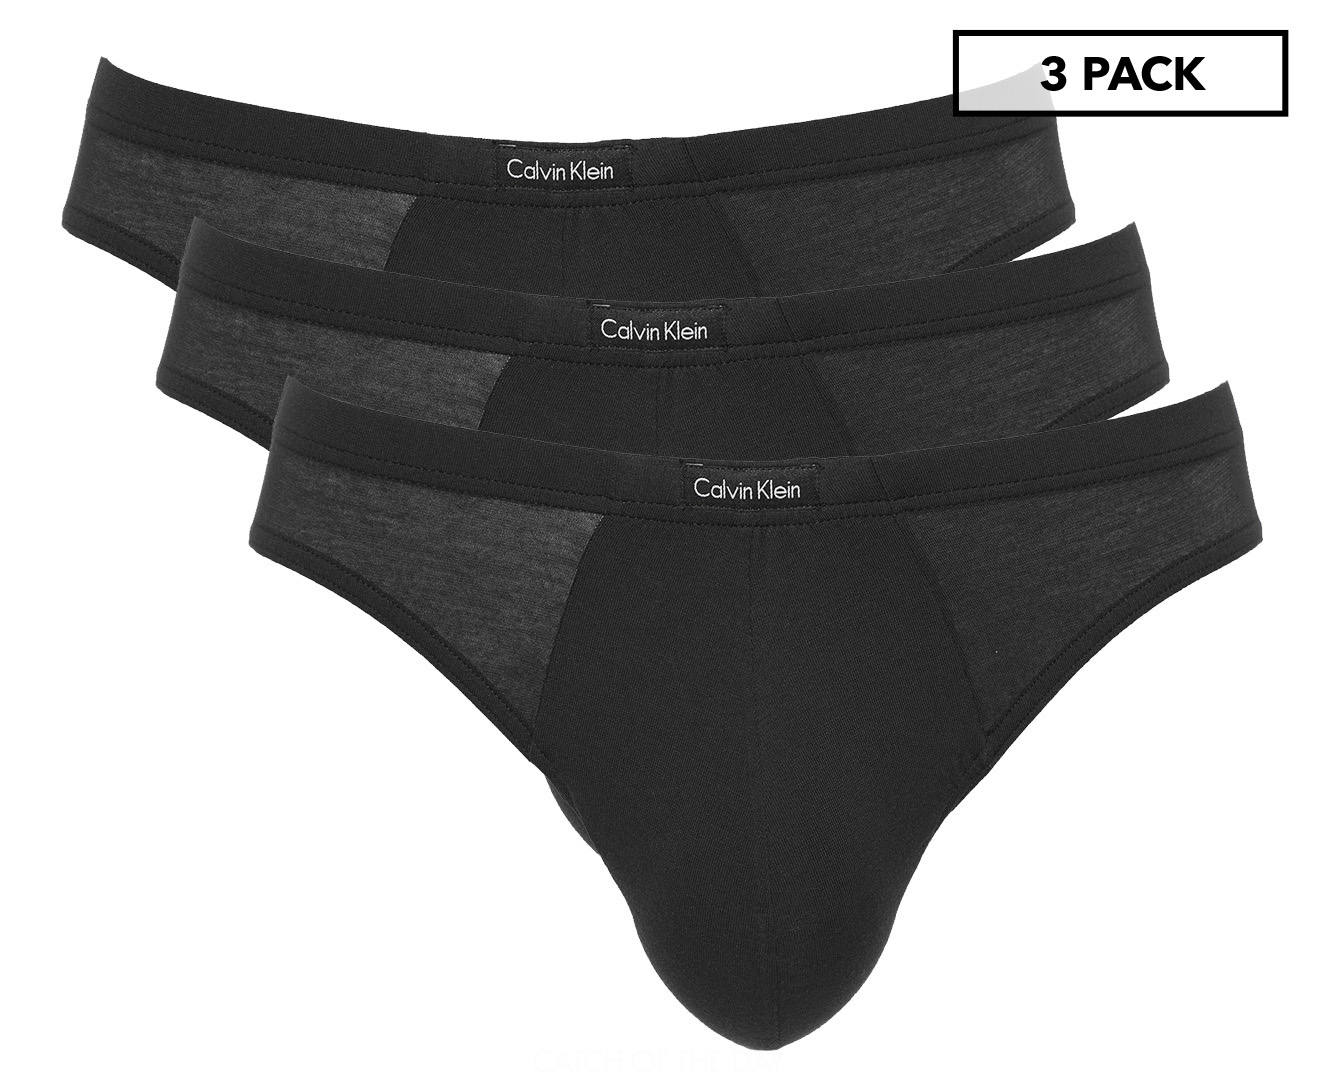 Calvin Klein Men's Body Modal Bikini Briefs 3-Pack - Black | Catch.com.au